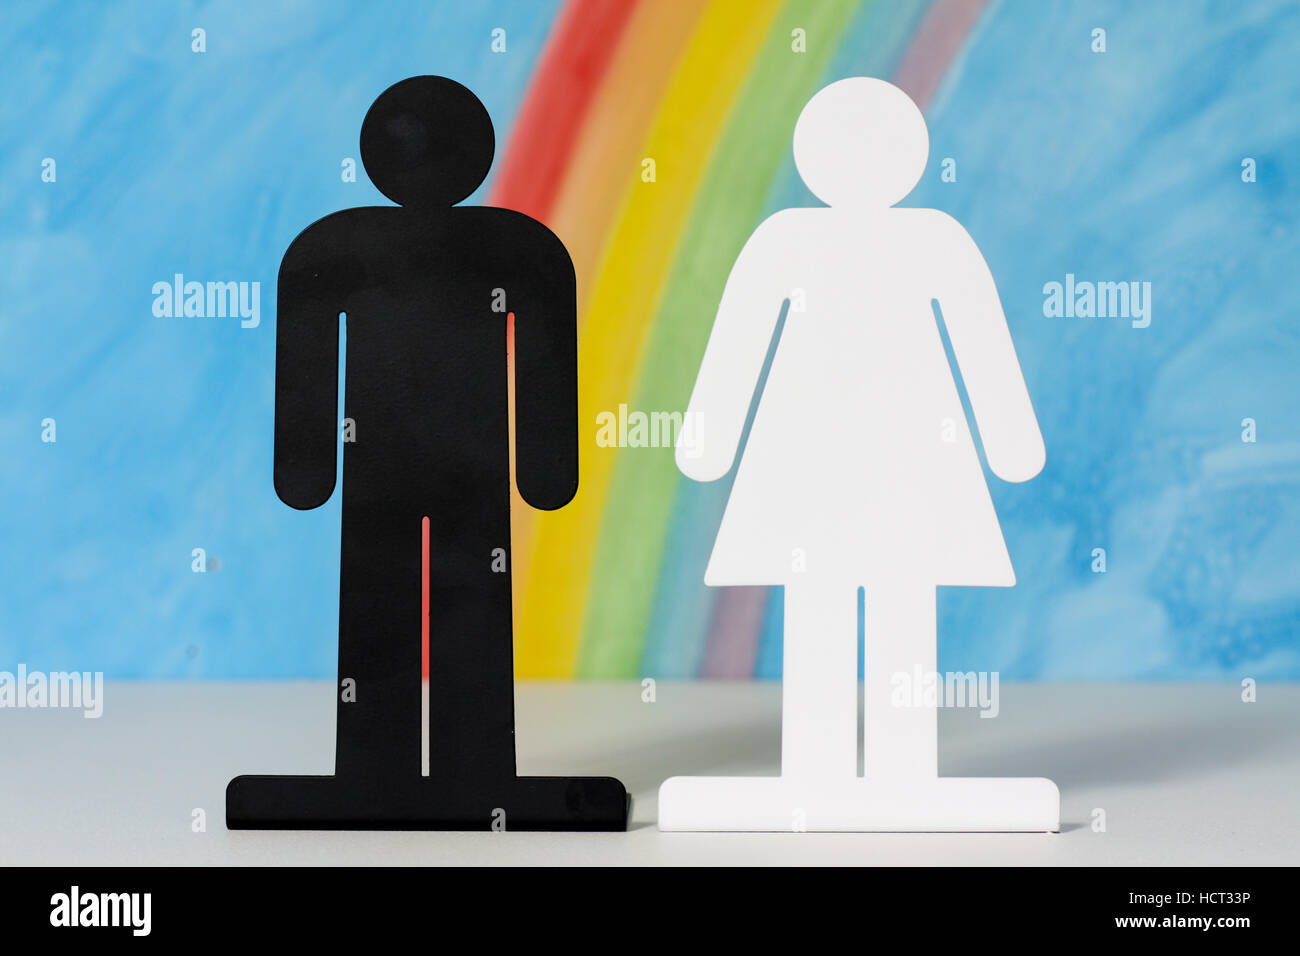 L'homme et de la femme des icônes avec un arc-en-ciel et ciel bleu pour illustrer le concept du mariage, les relations et l'égalité des sexes. Banque D'Images